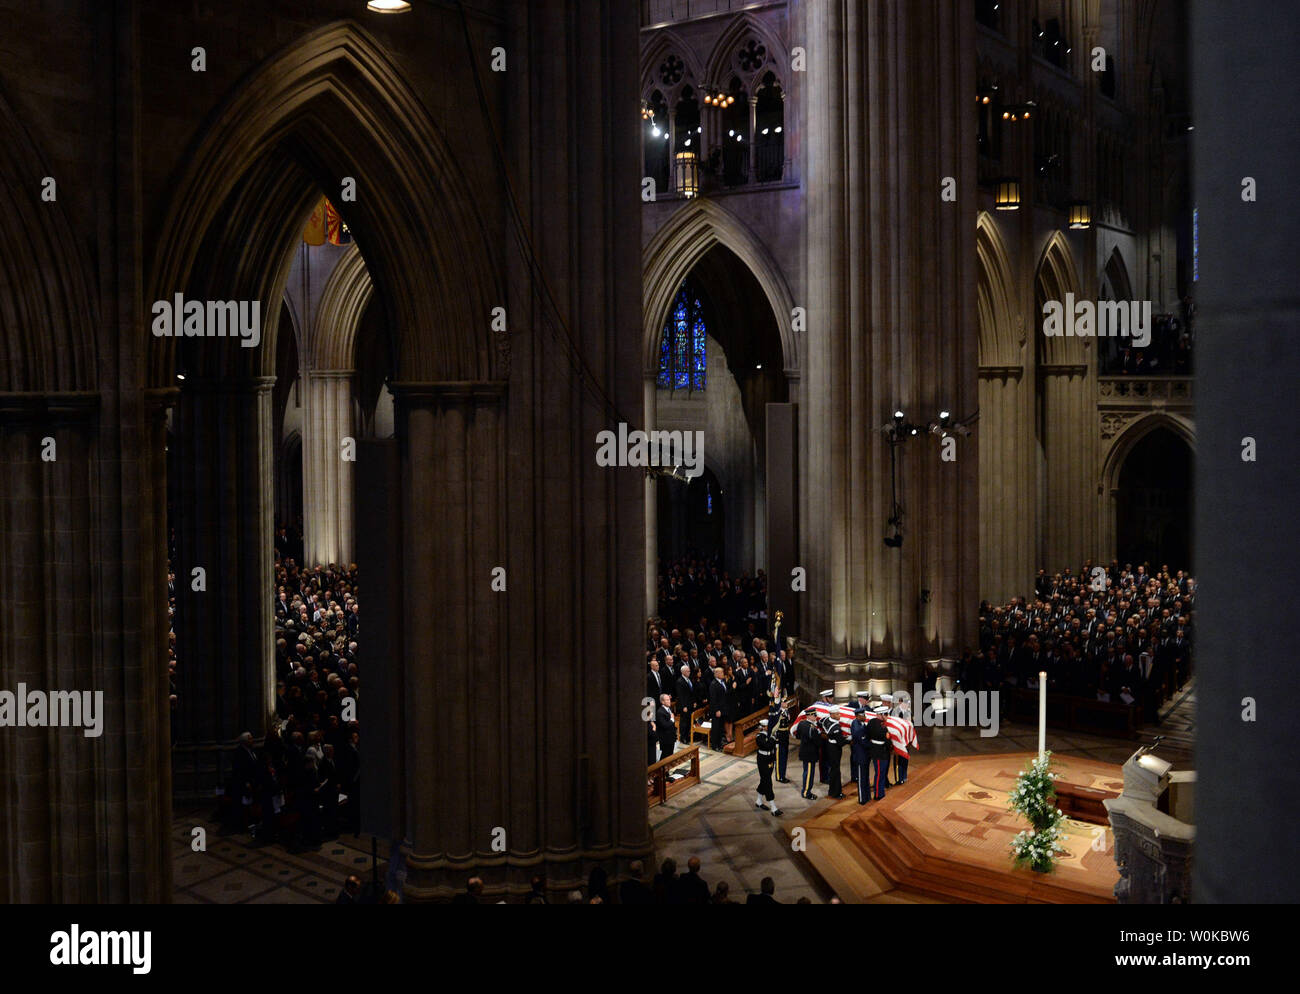 Die Schatulle kommt für die Beerdigung des ehemaligen Präsidenten George H.W. Bush in der National Cathedral in Washington D.C. am 5. Dezember 2018. Foto von Kevin Dietsch/UPI Stockfoto